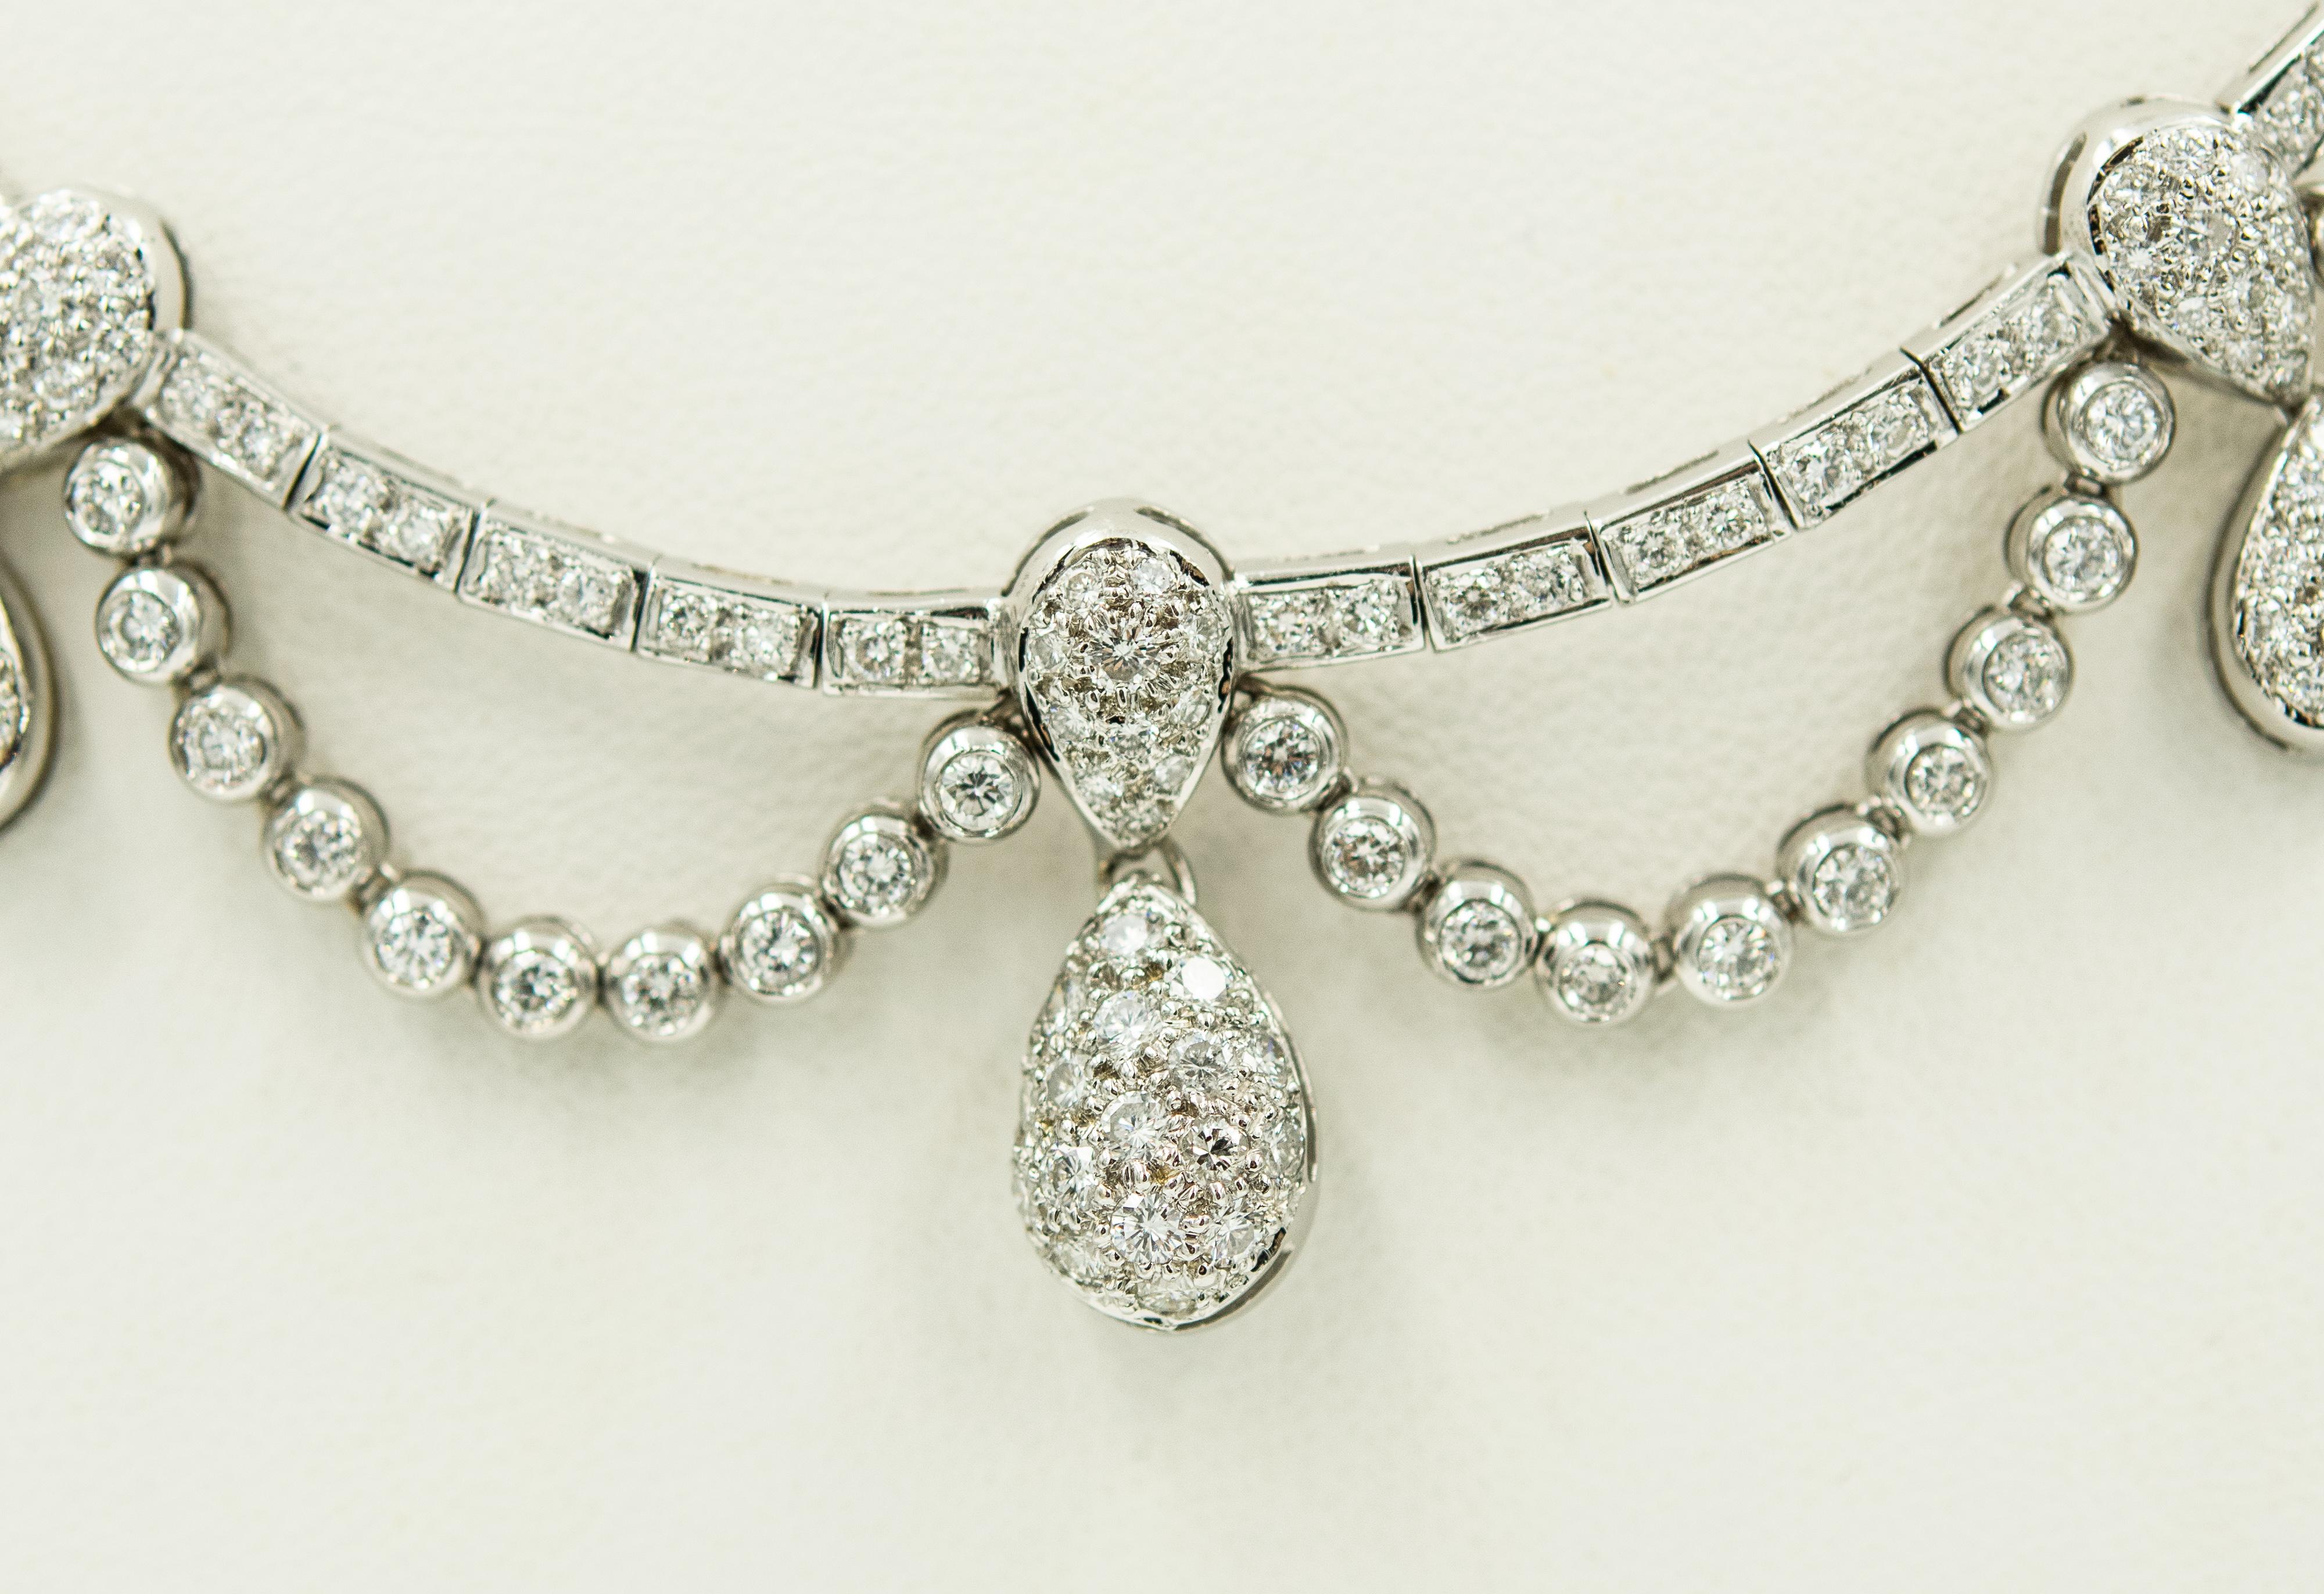 Die atemberaubende Diamantkette aus 18 Karat Weißgold besteht aus einem Mittelteil mit sieben Diamanttropfen, sechs flexiblen, geschwungenen Diamantabschnitten und einer Hauptreihe aus perlenbesetzten Diamanten.  Diese wunderschöne Halskette wäre